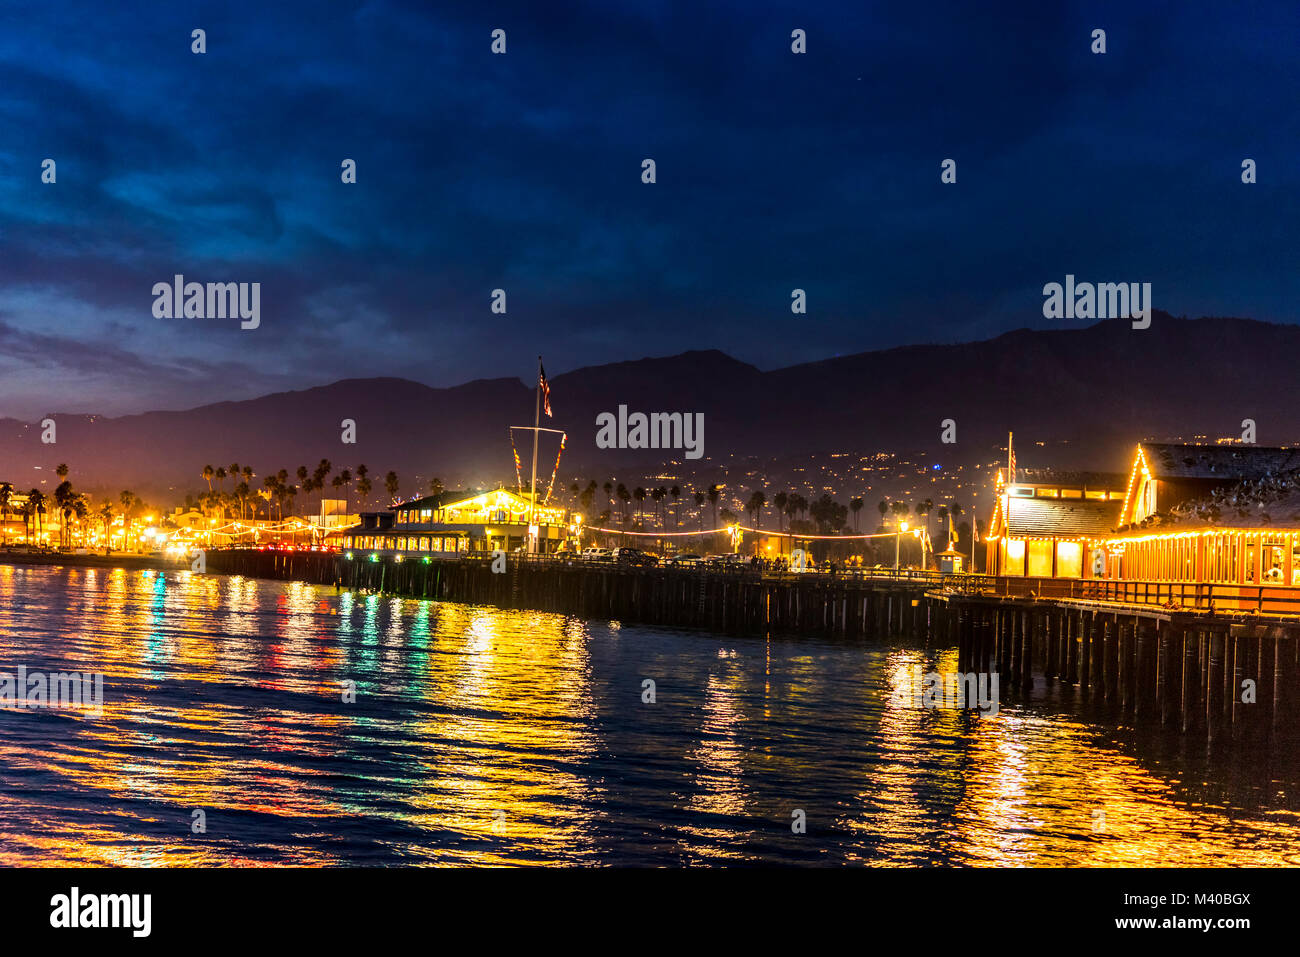 Image de Stearns Wharf de nuit à Santa Barbara en Californie montre les lumières brillantes d'un quartier animé de la ville. Banque D'Images